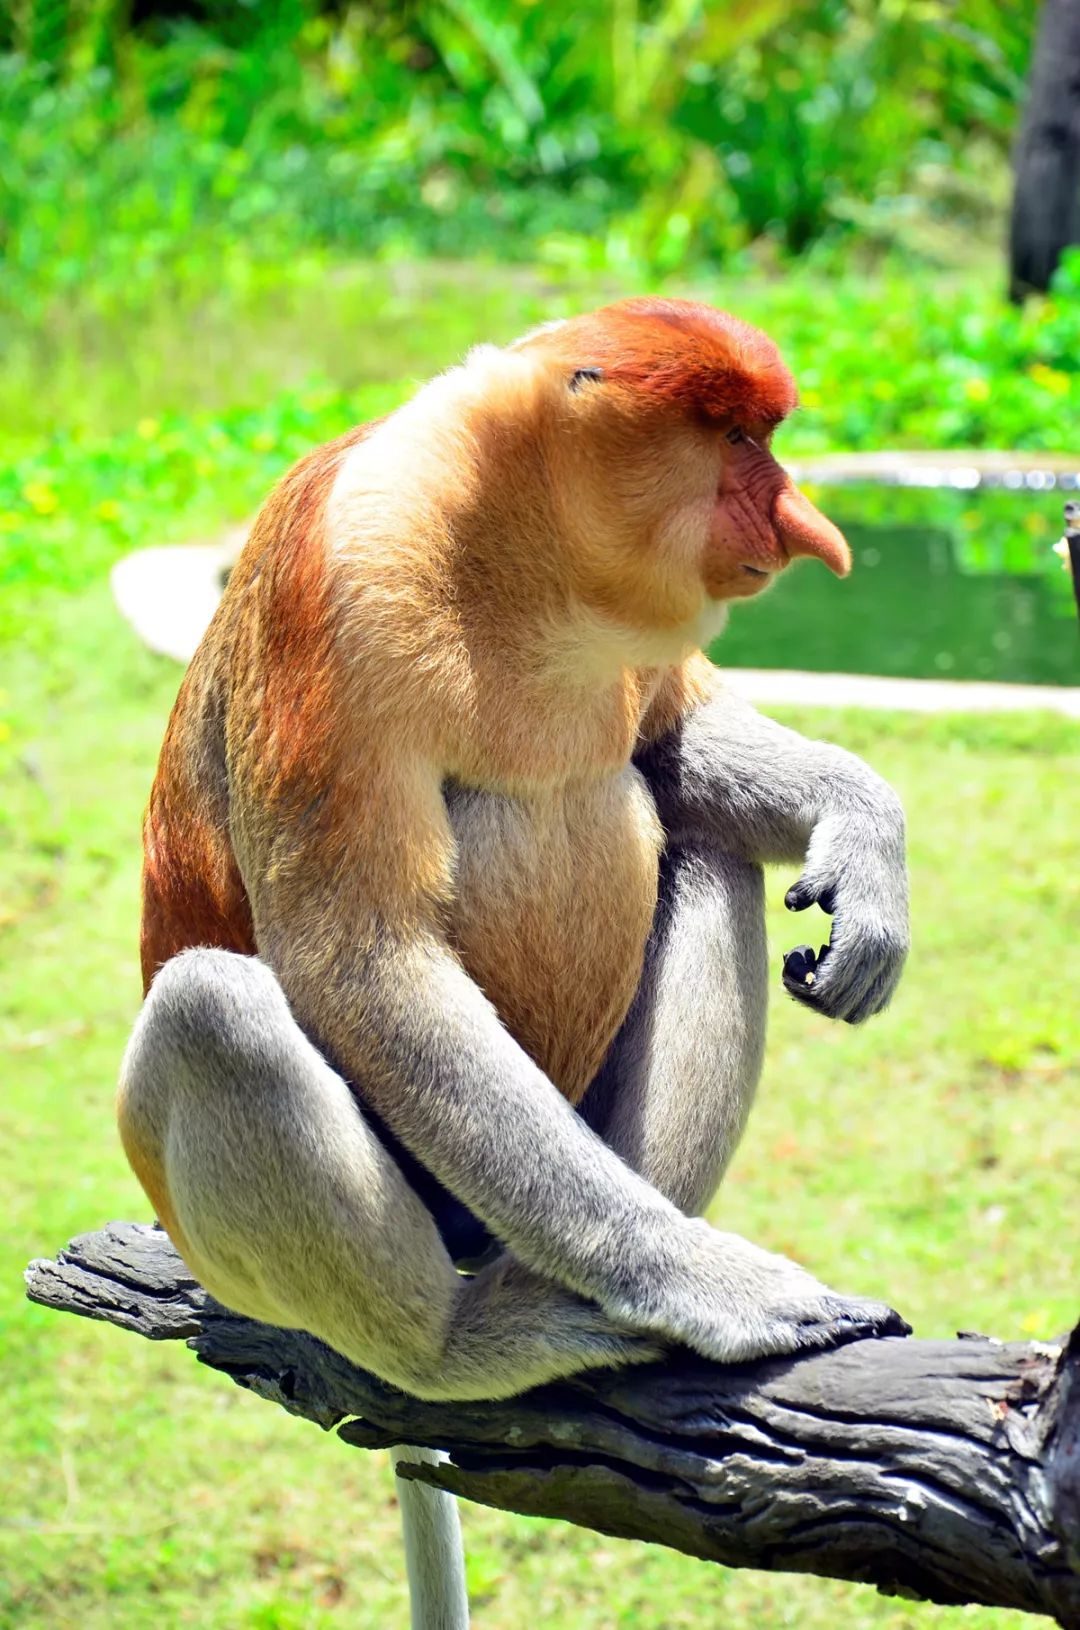 马来西亚山打根Sepilok猩猩康复中心 & 热带雨林探索中心 & 拉卜湾长鼻猴保护区一日游 - Klook客路